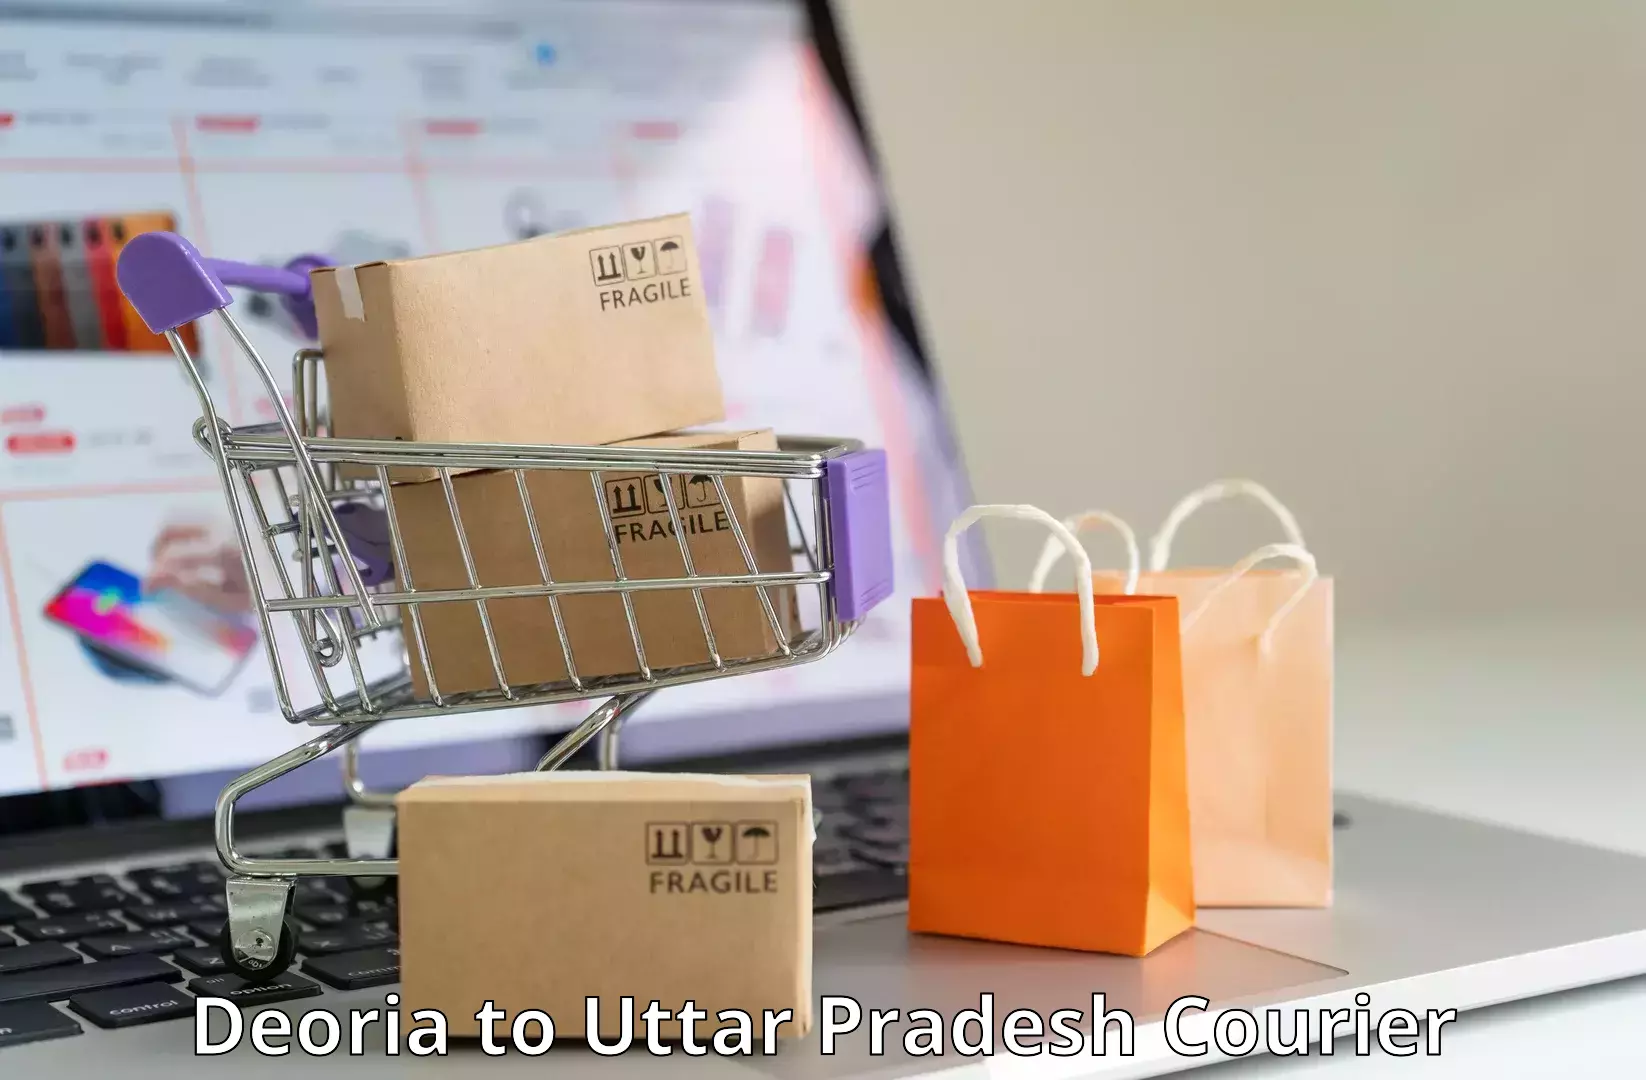 Cargo courier service Deoria to Noida